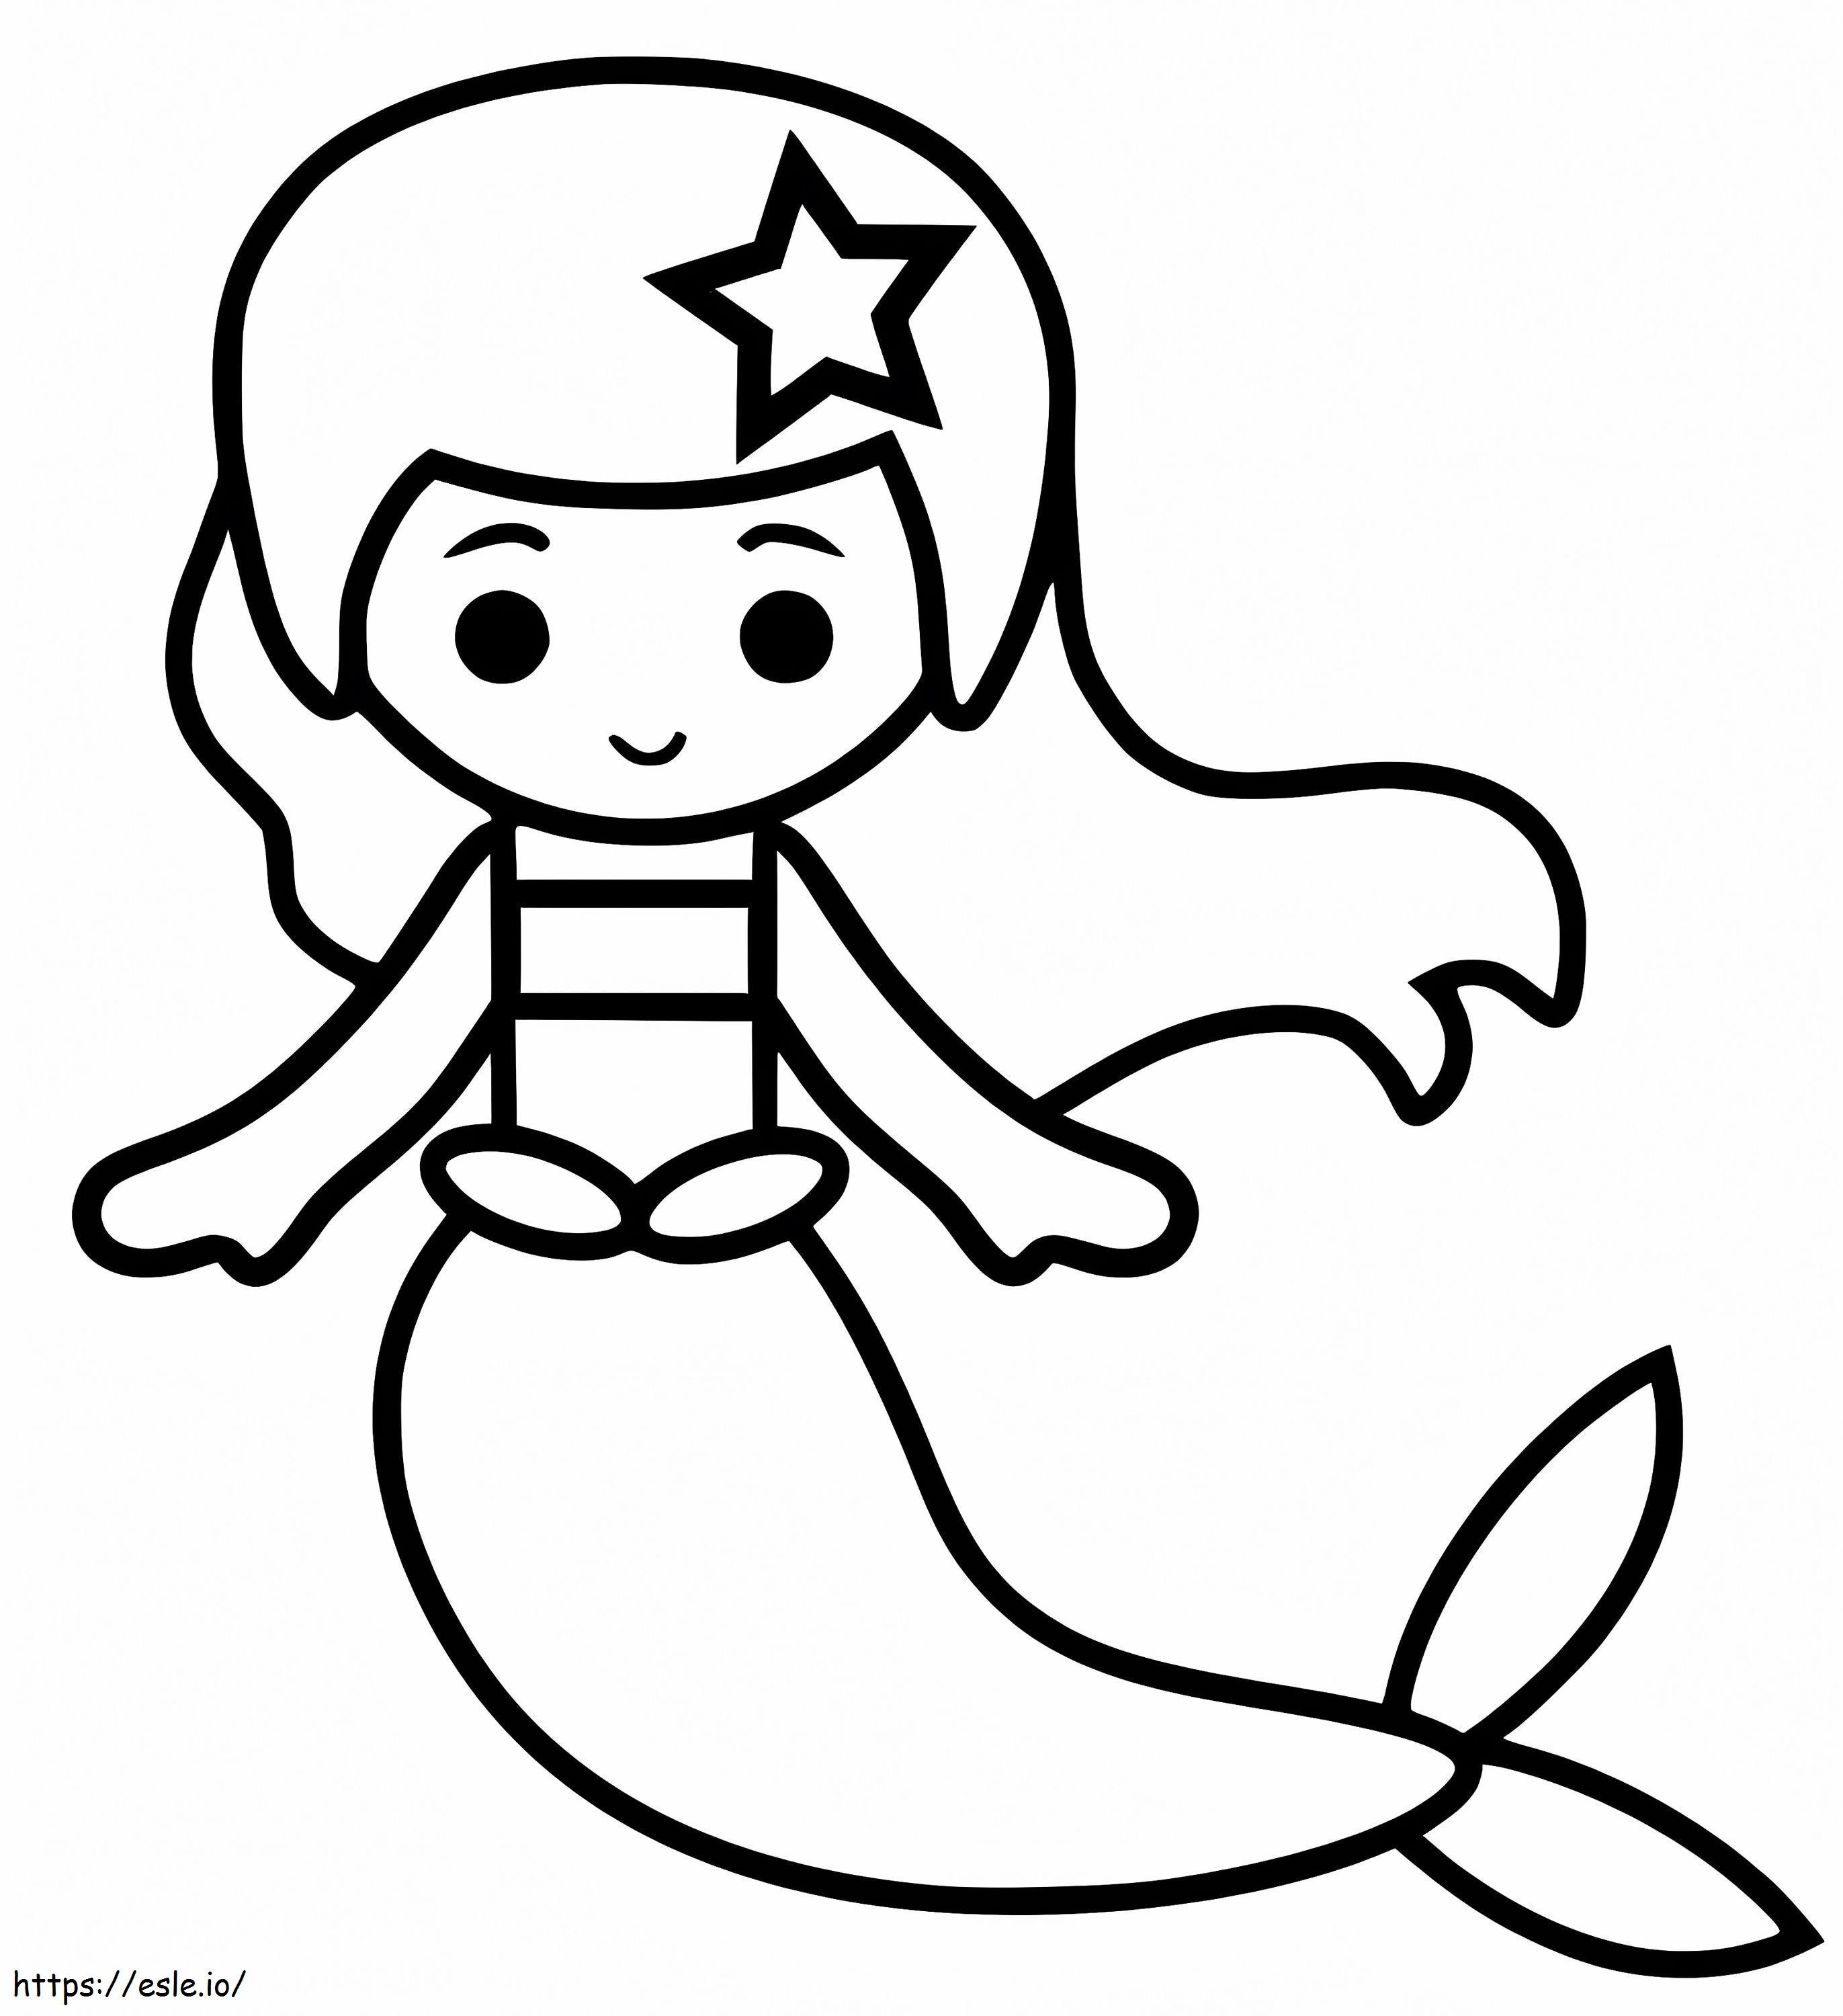 Simple Mermaid coloring page